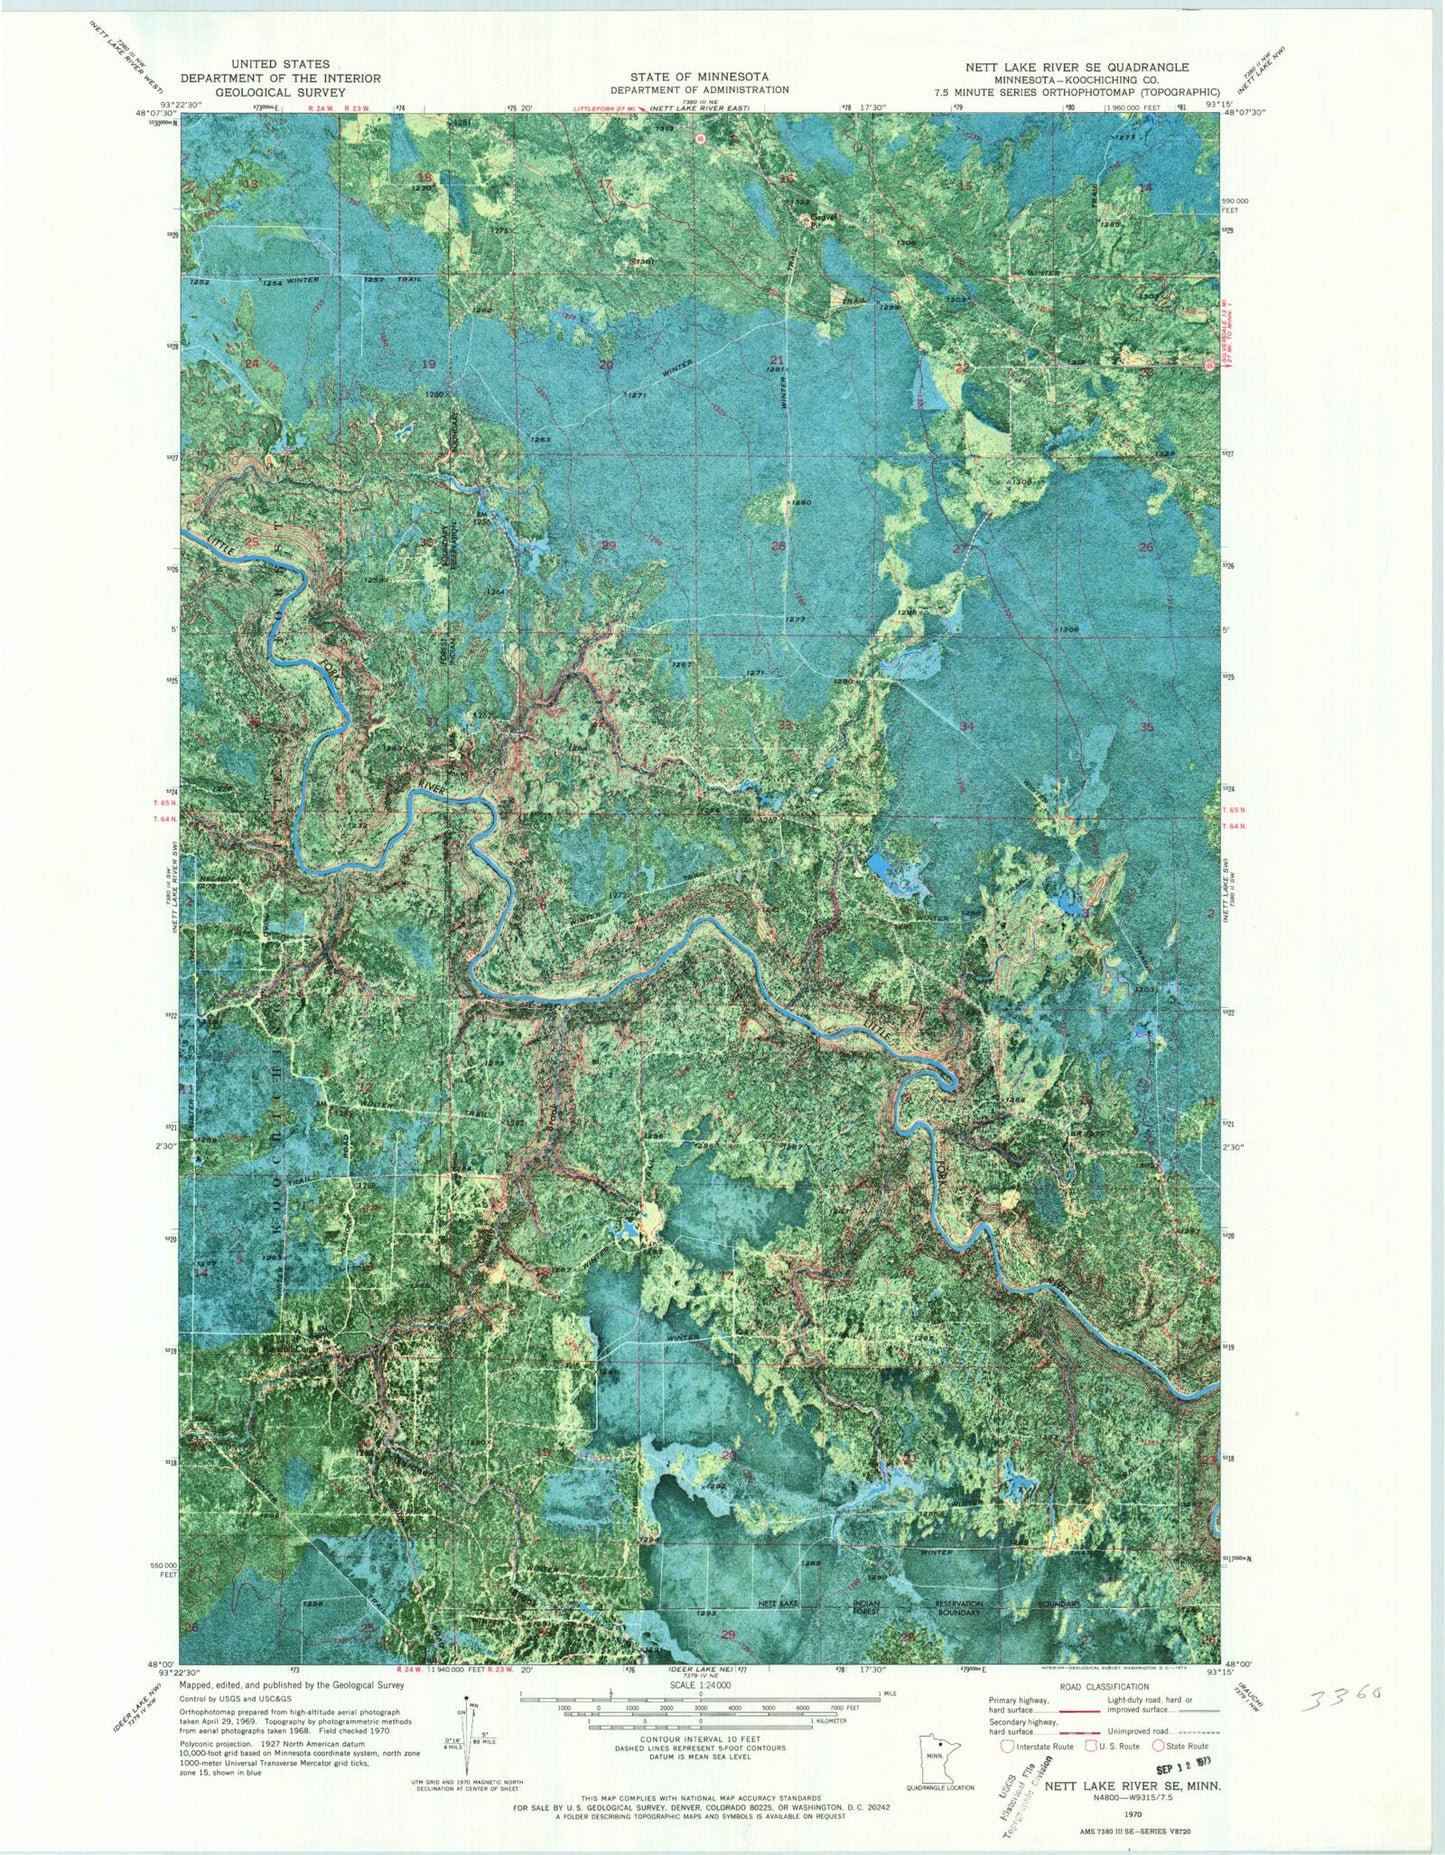 Classic USGS Nett Lake River SE Minnesota 7.5'x7.5' Topo Map Image